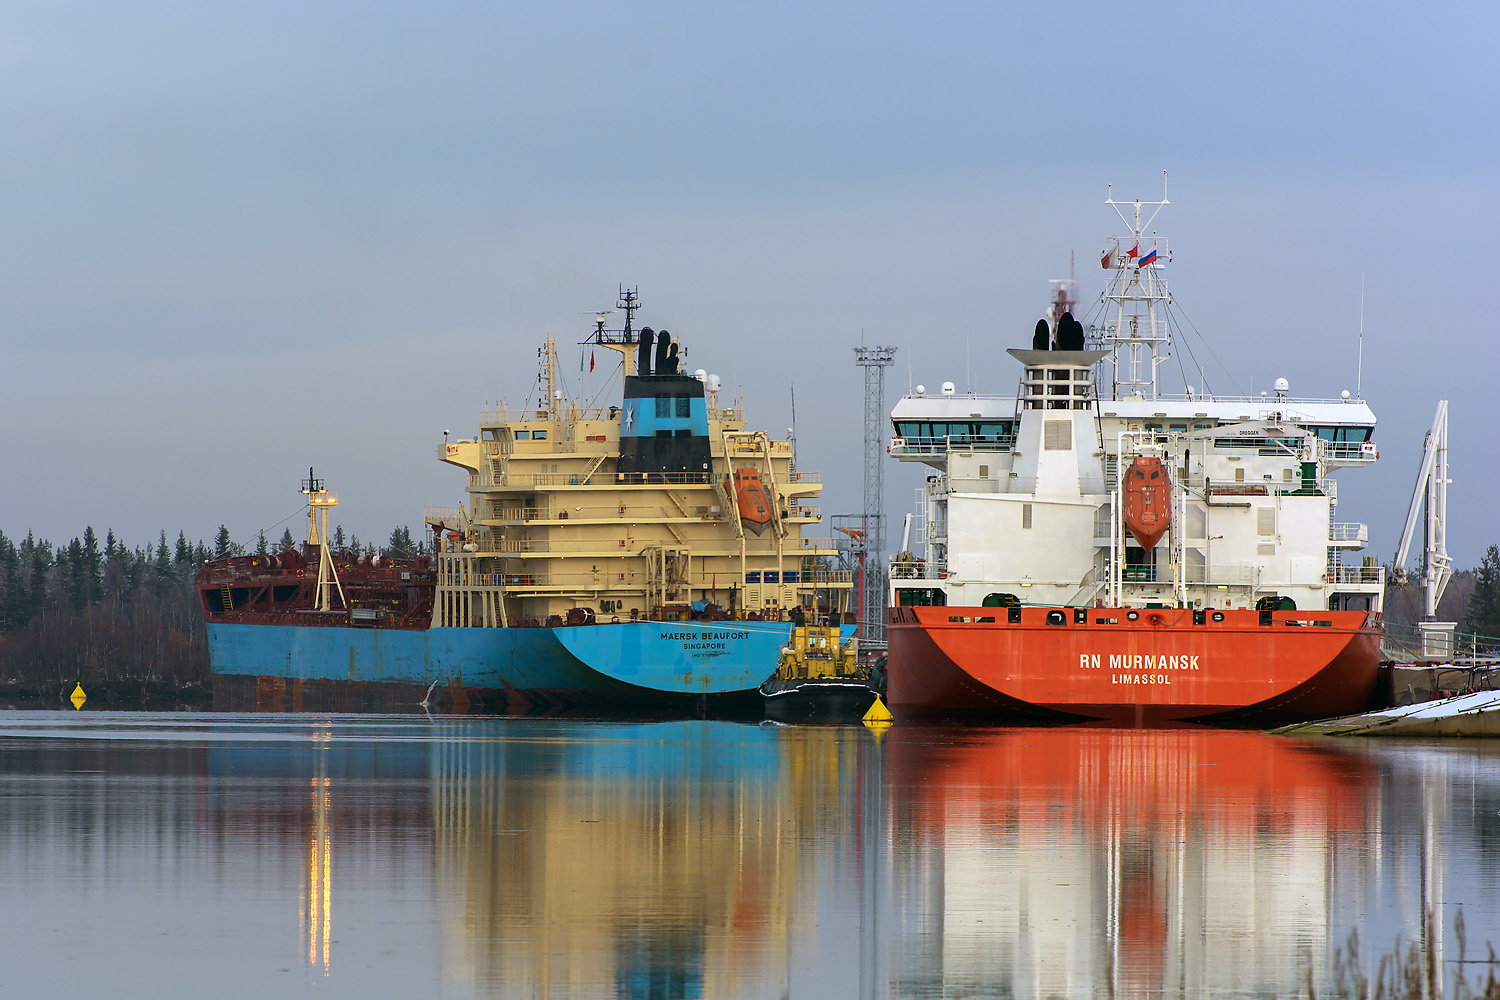 Maersk Beaufort, RN Murmansk